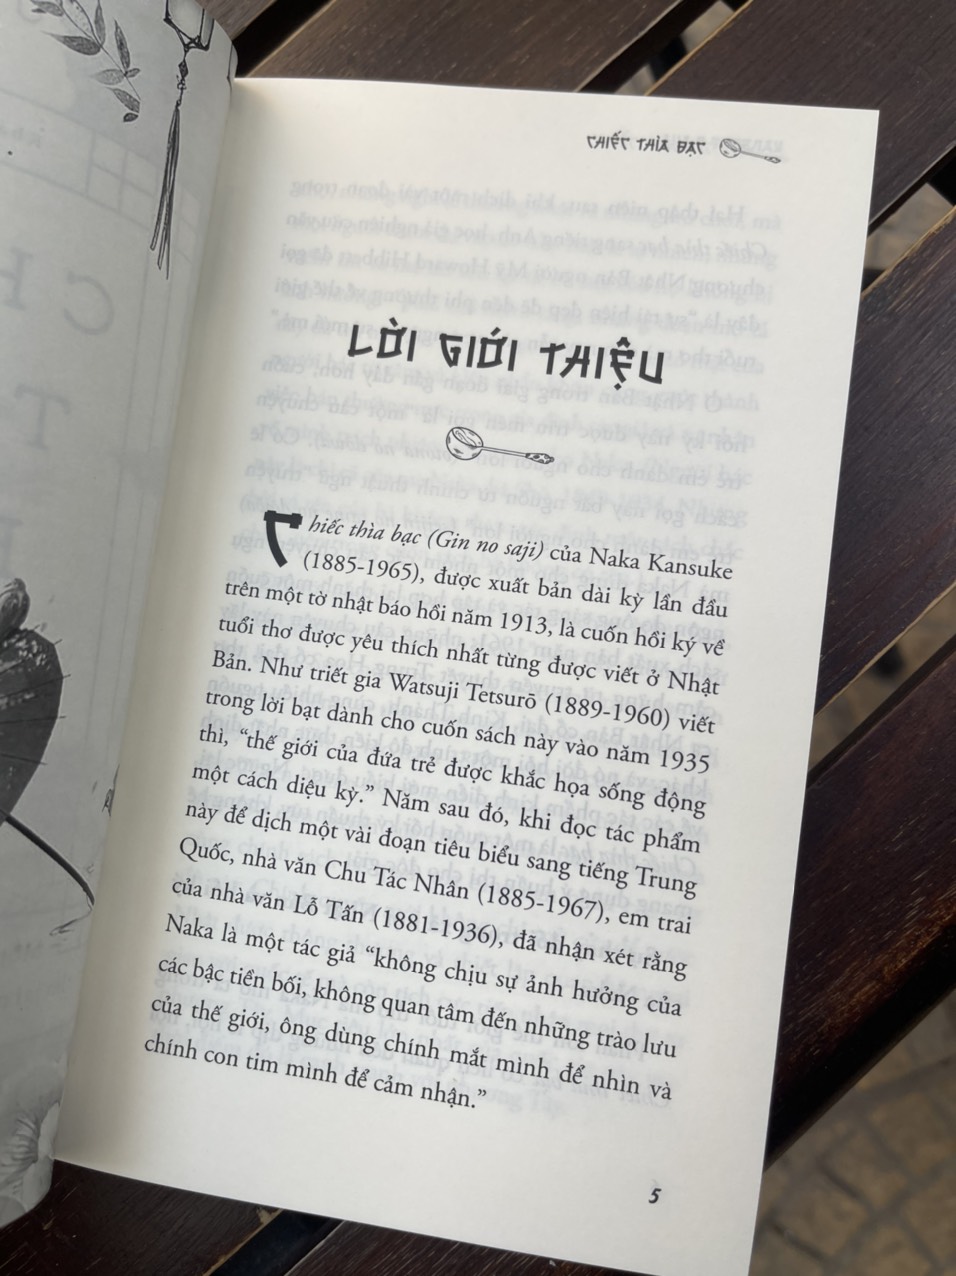 Hình ảnh (Một trong những tác phẩm KINH ĐIỂN VĨ ĐẠI của văn học Nhật hiện đại với hơn 1 triệu bản đã được bán ra ) CHIẾC THÌA BẠC - Kansuke Naka - Khánh Trang dịch – 1980 Books – NXB Thanh Niên 